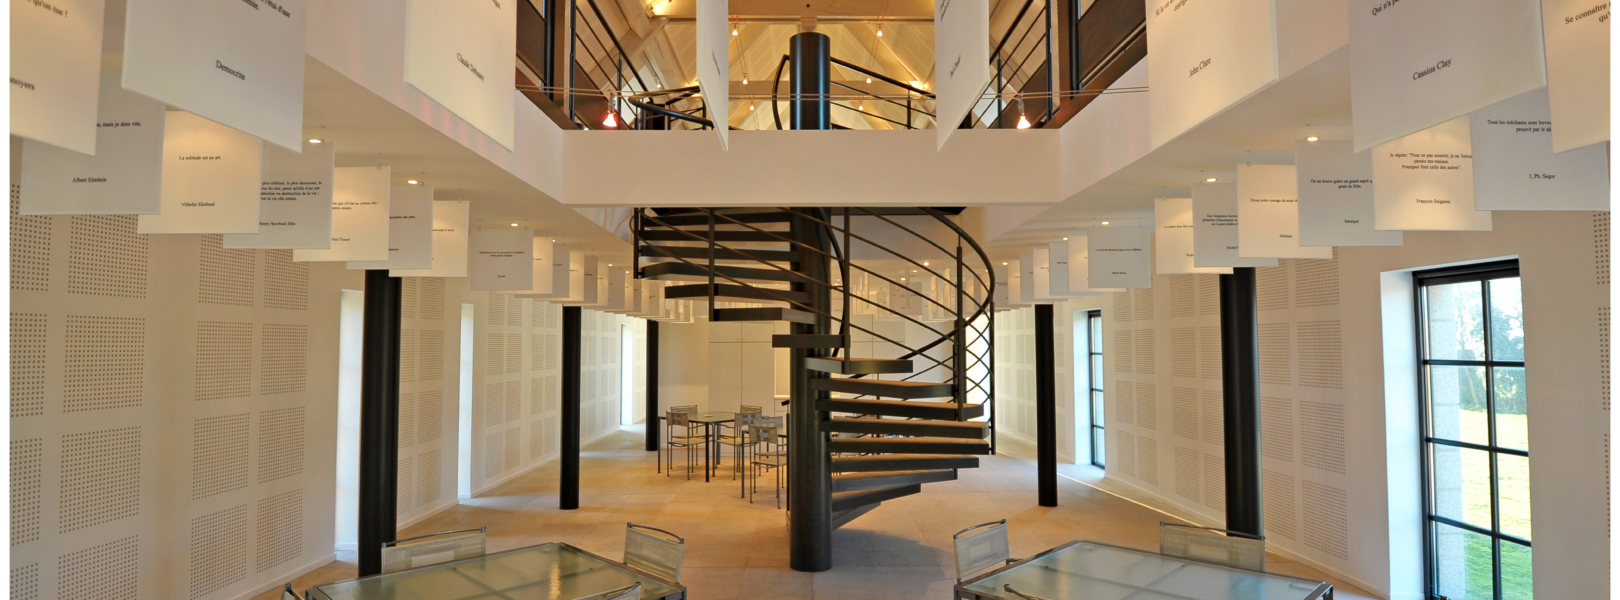 escalier helicoidal salle de reception acier granit